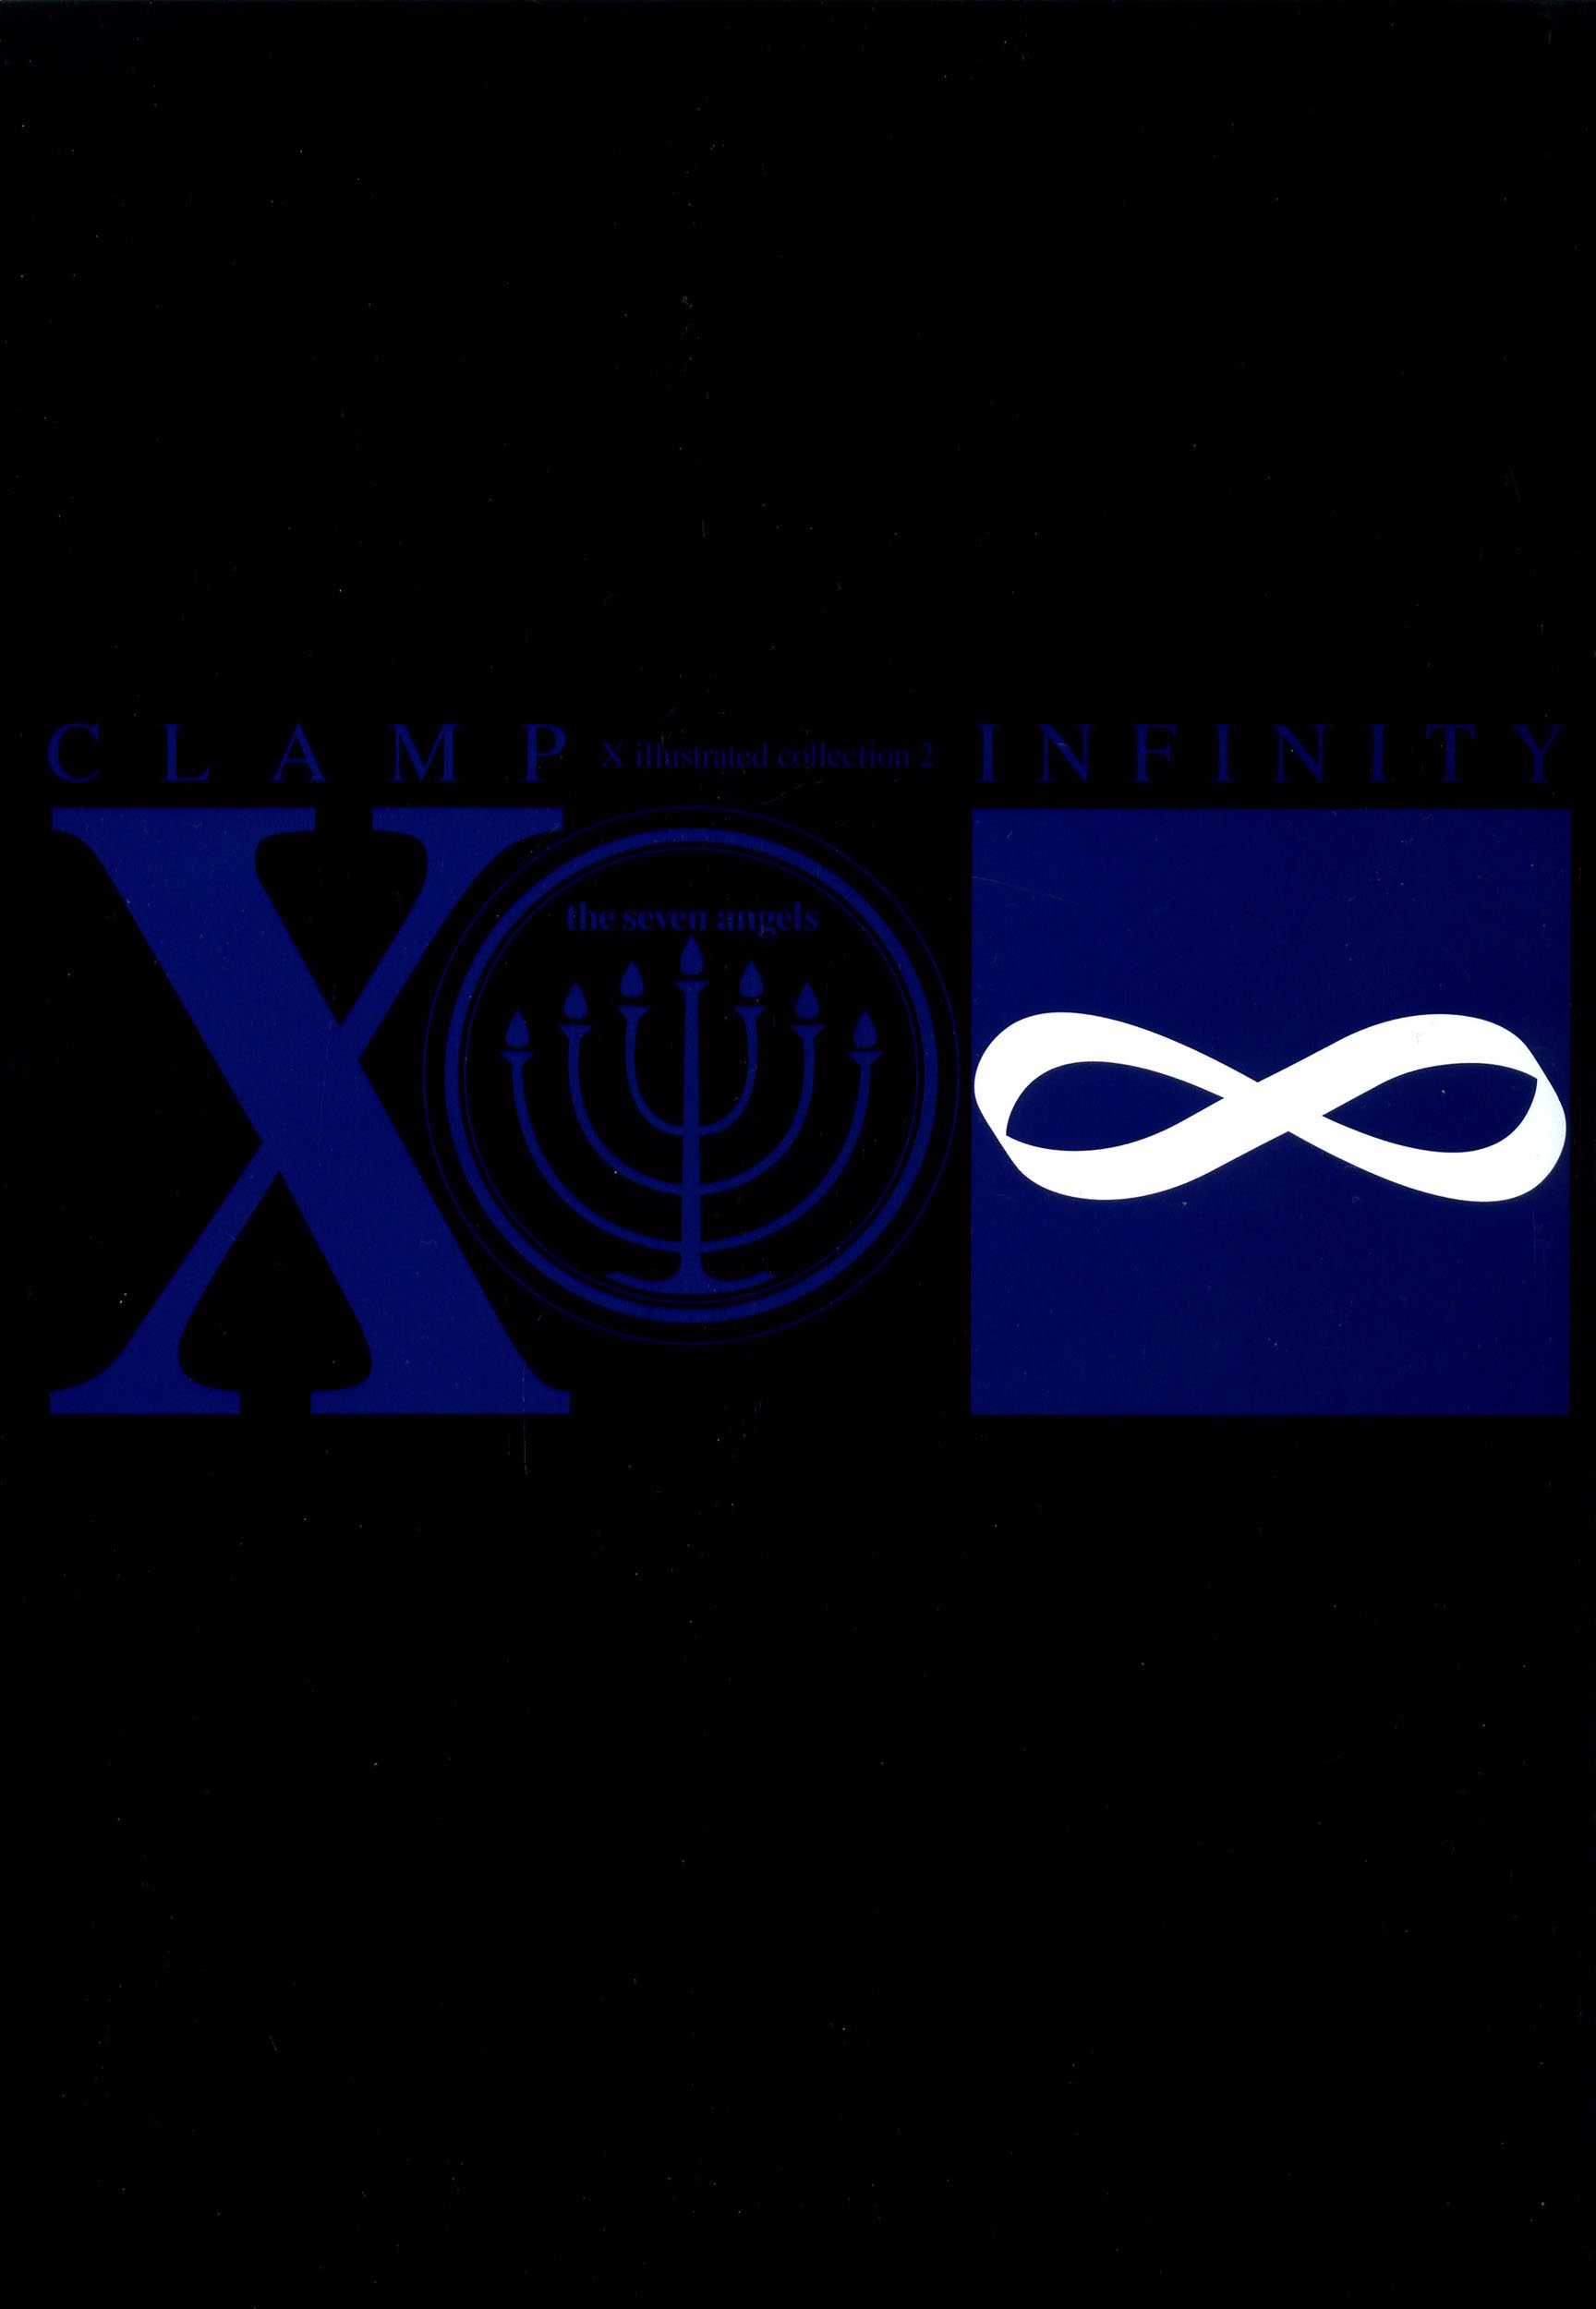 xclampinfinityx2135.jpg